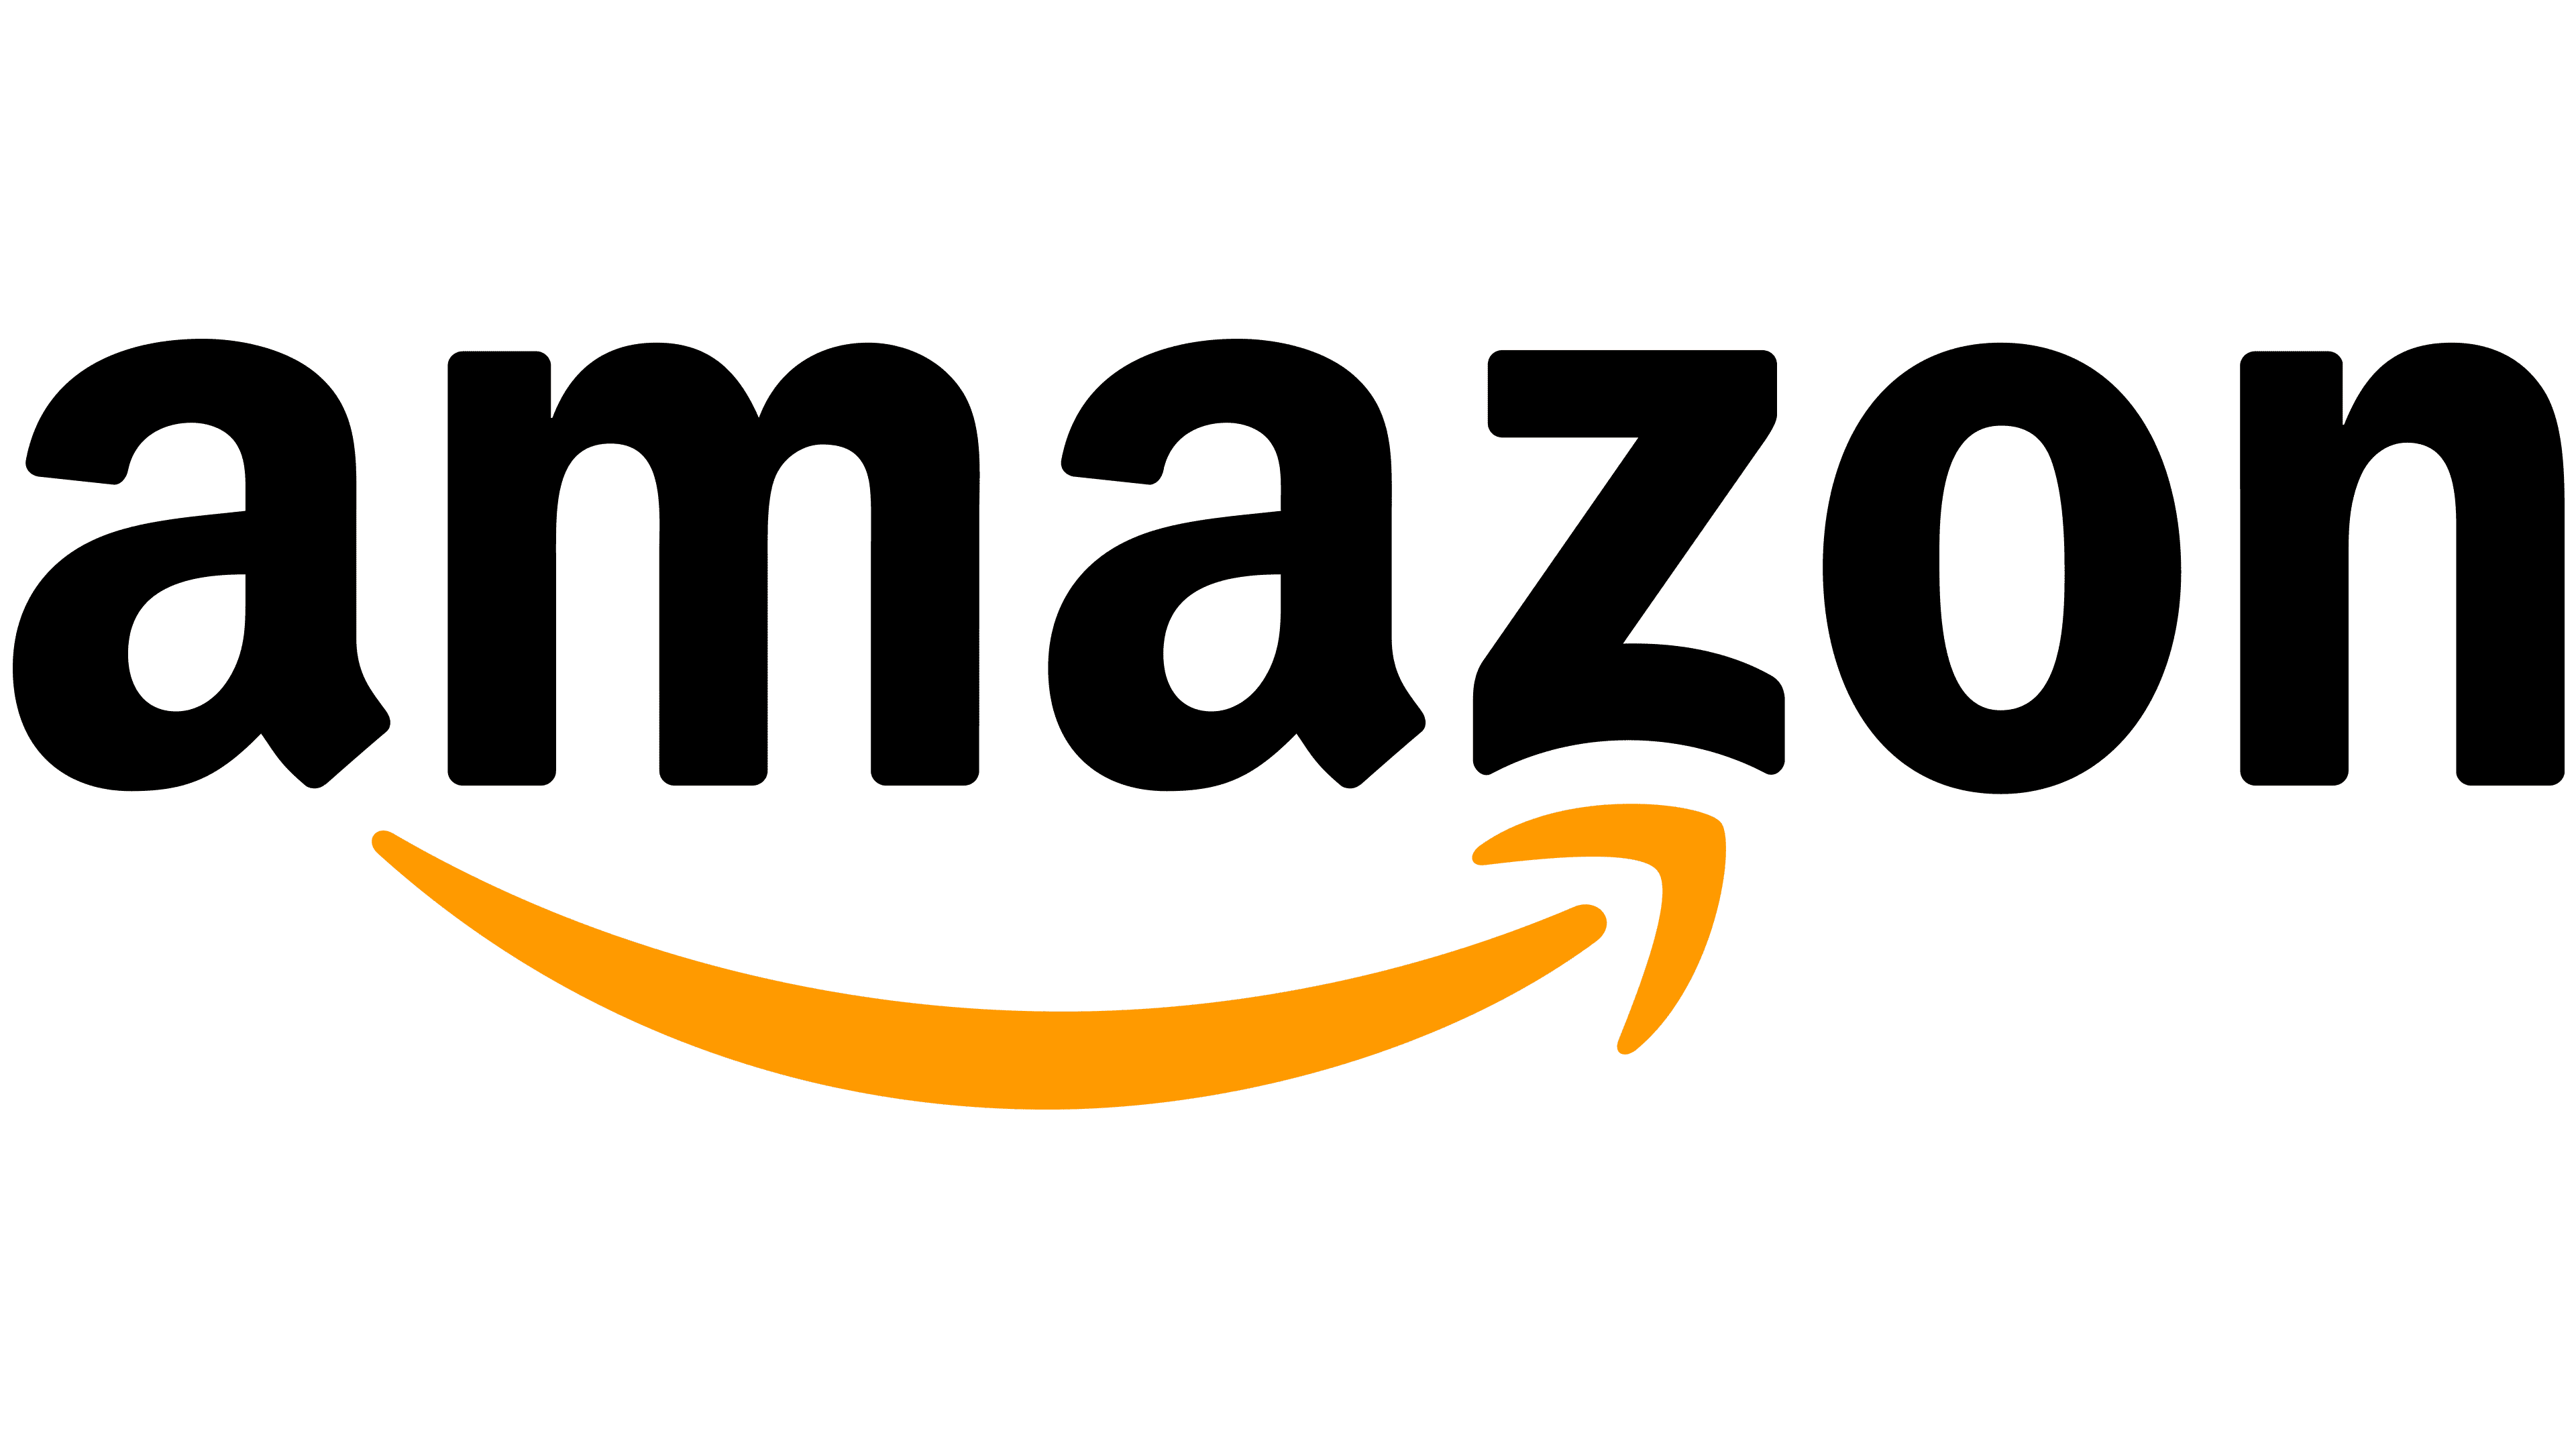 Amazon Logo PNG